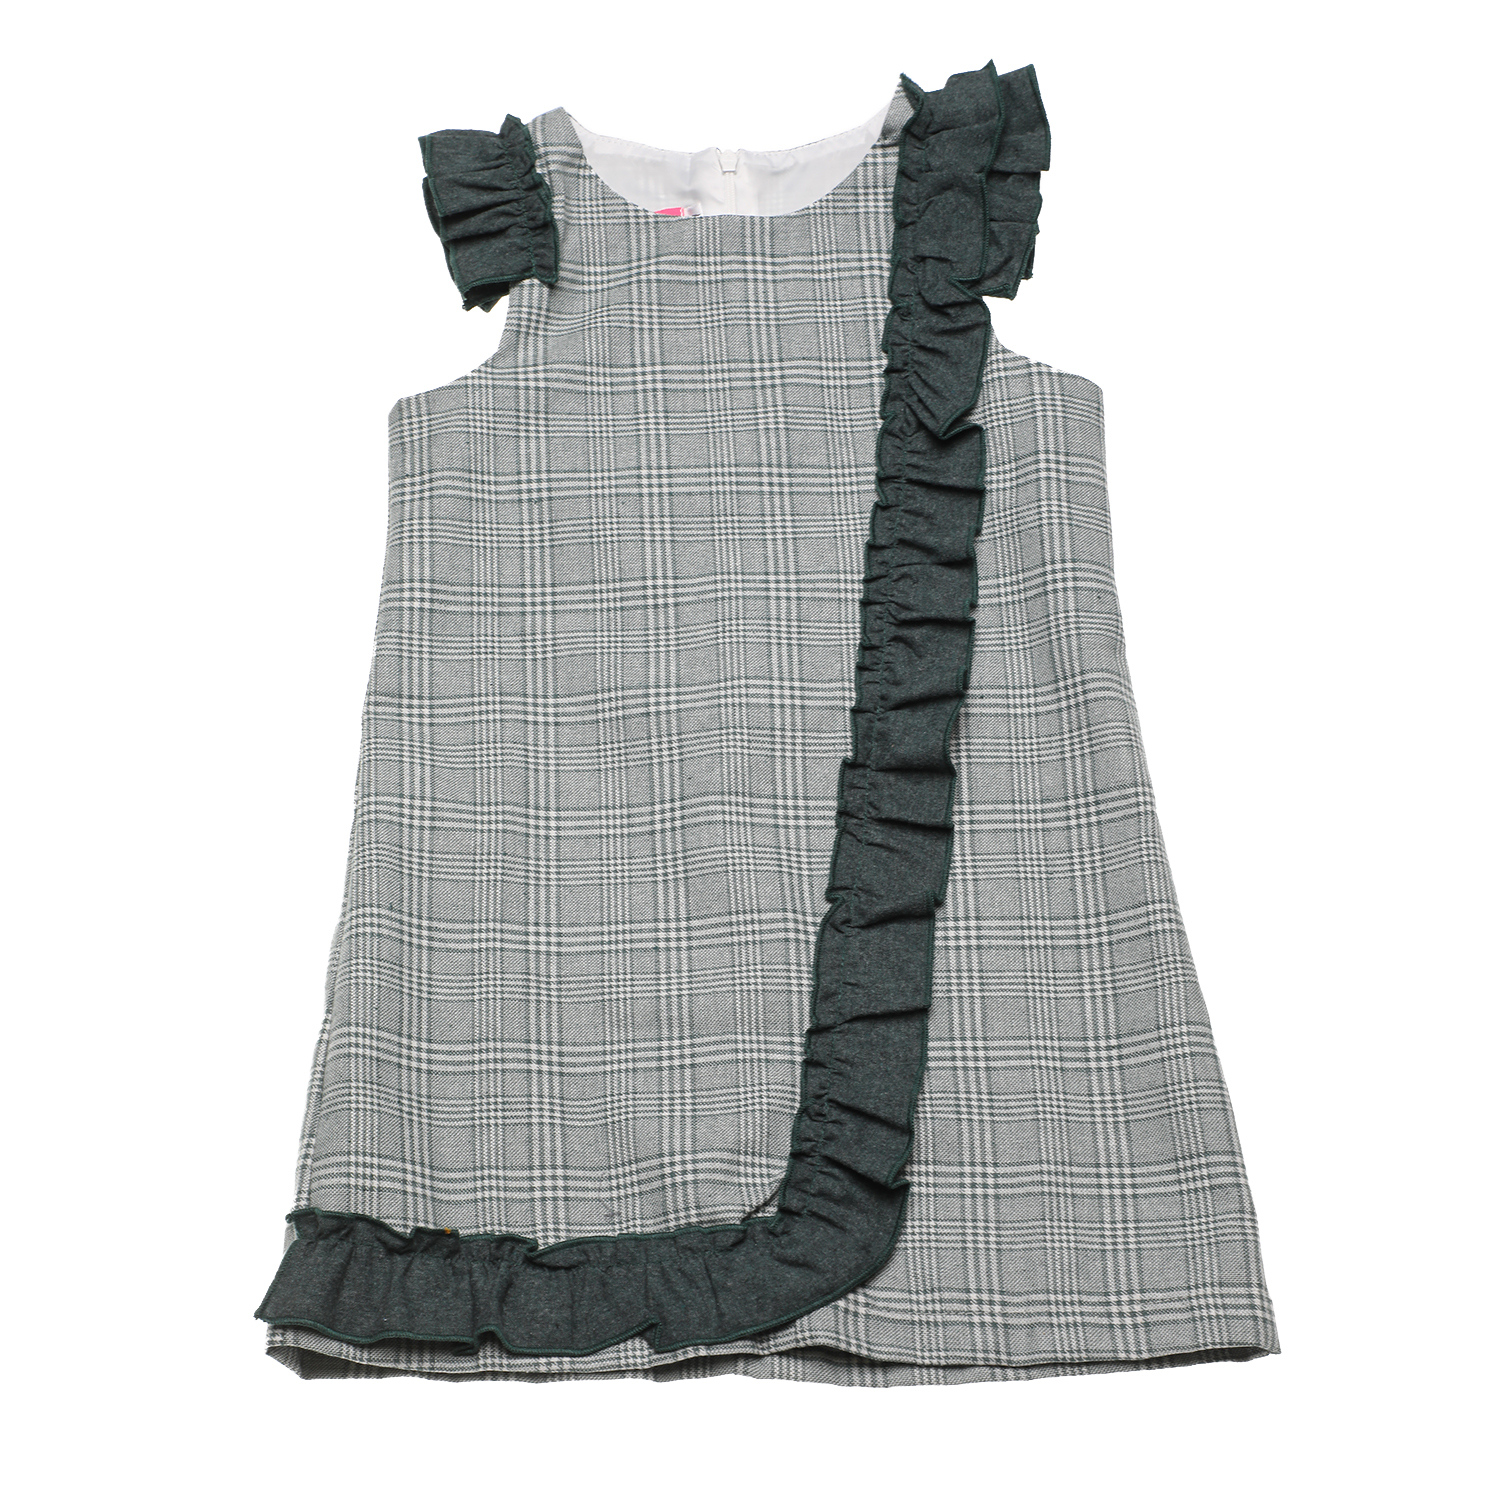 Παιδικά/Girls/Ρούχα/Φορέματα Κοντομάνικα-Αμάνικα SAM 0-13 - Παιδικό φόρεμα SAM 0-13 καρό πράσινο